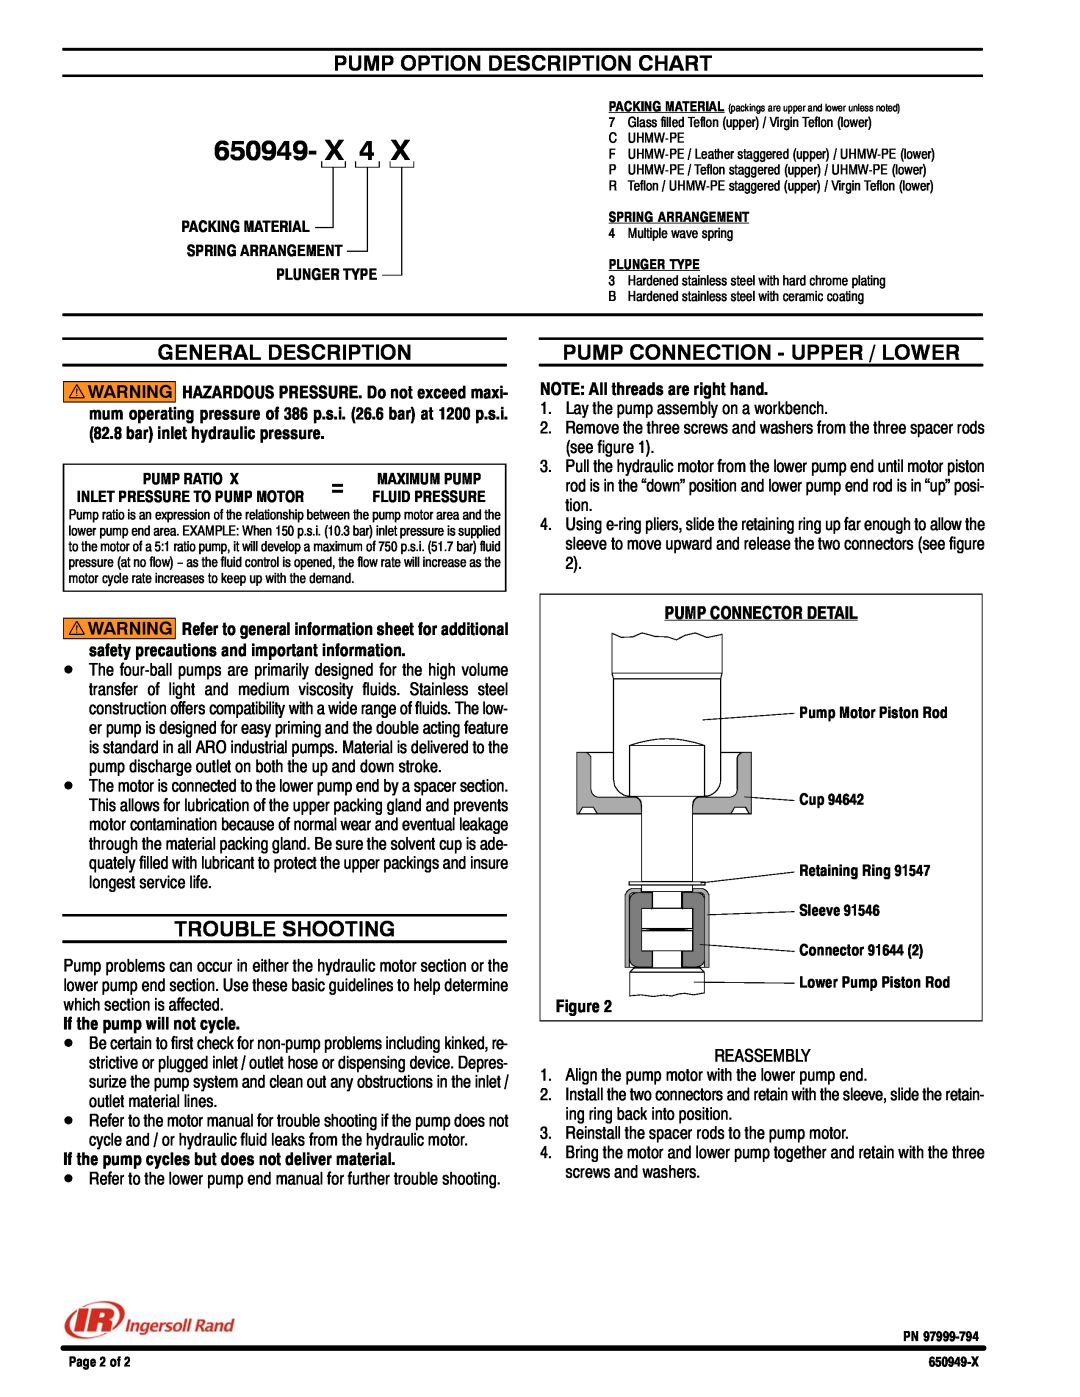 Ingersoll-Rand 650949-X specifications Pump Option Description Chart, General Description, Trouble Shooting, 650949- X 4 